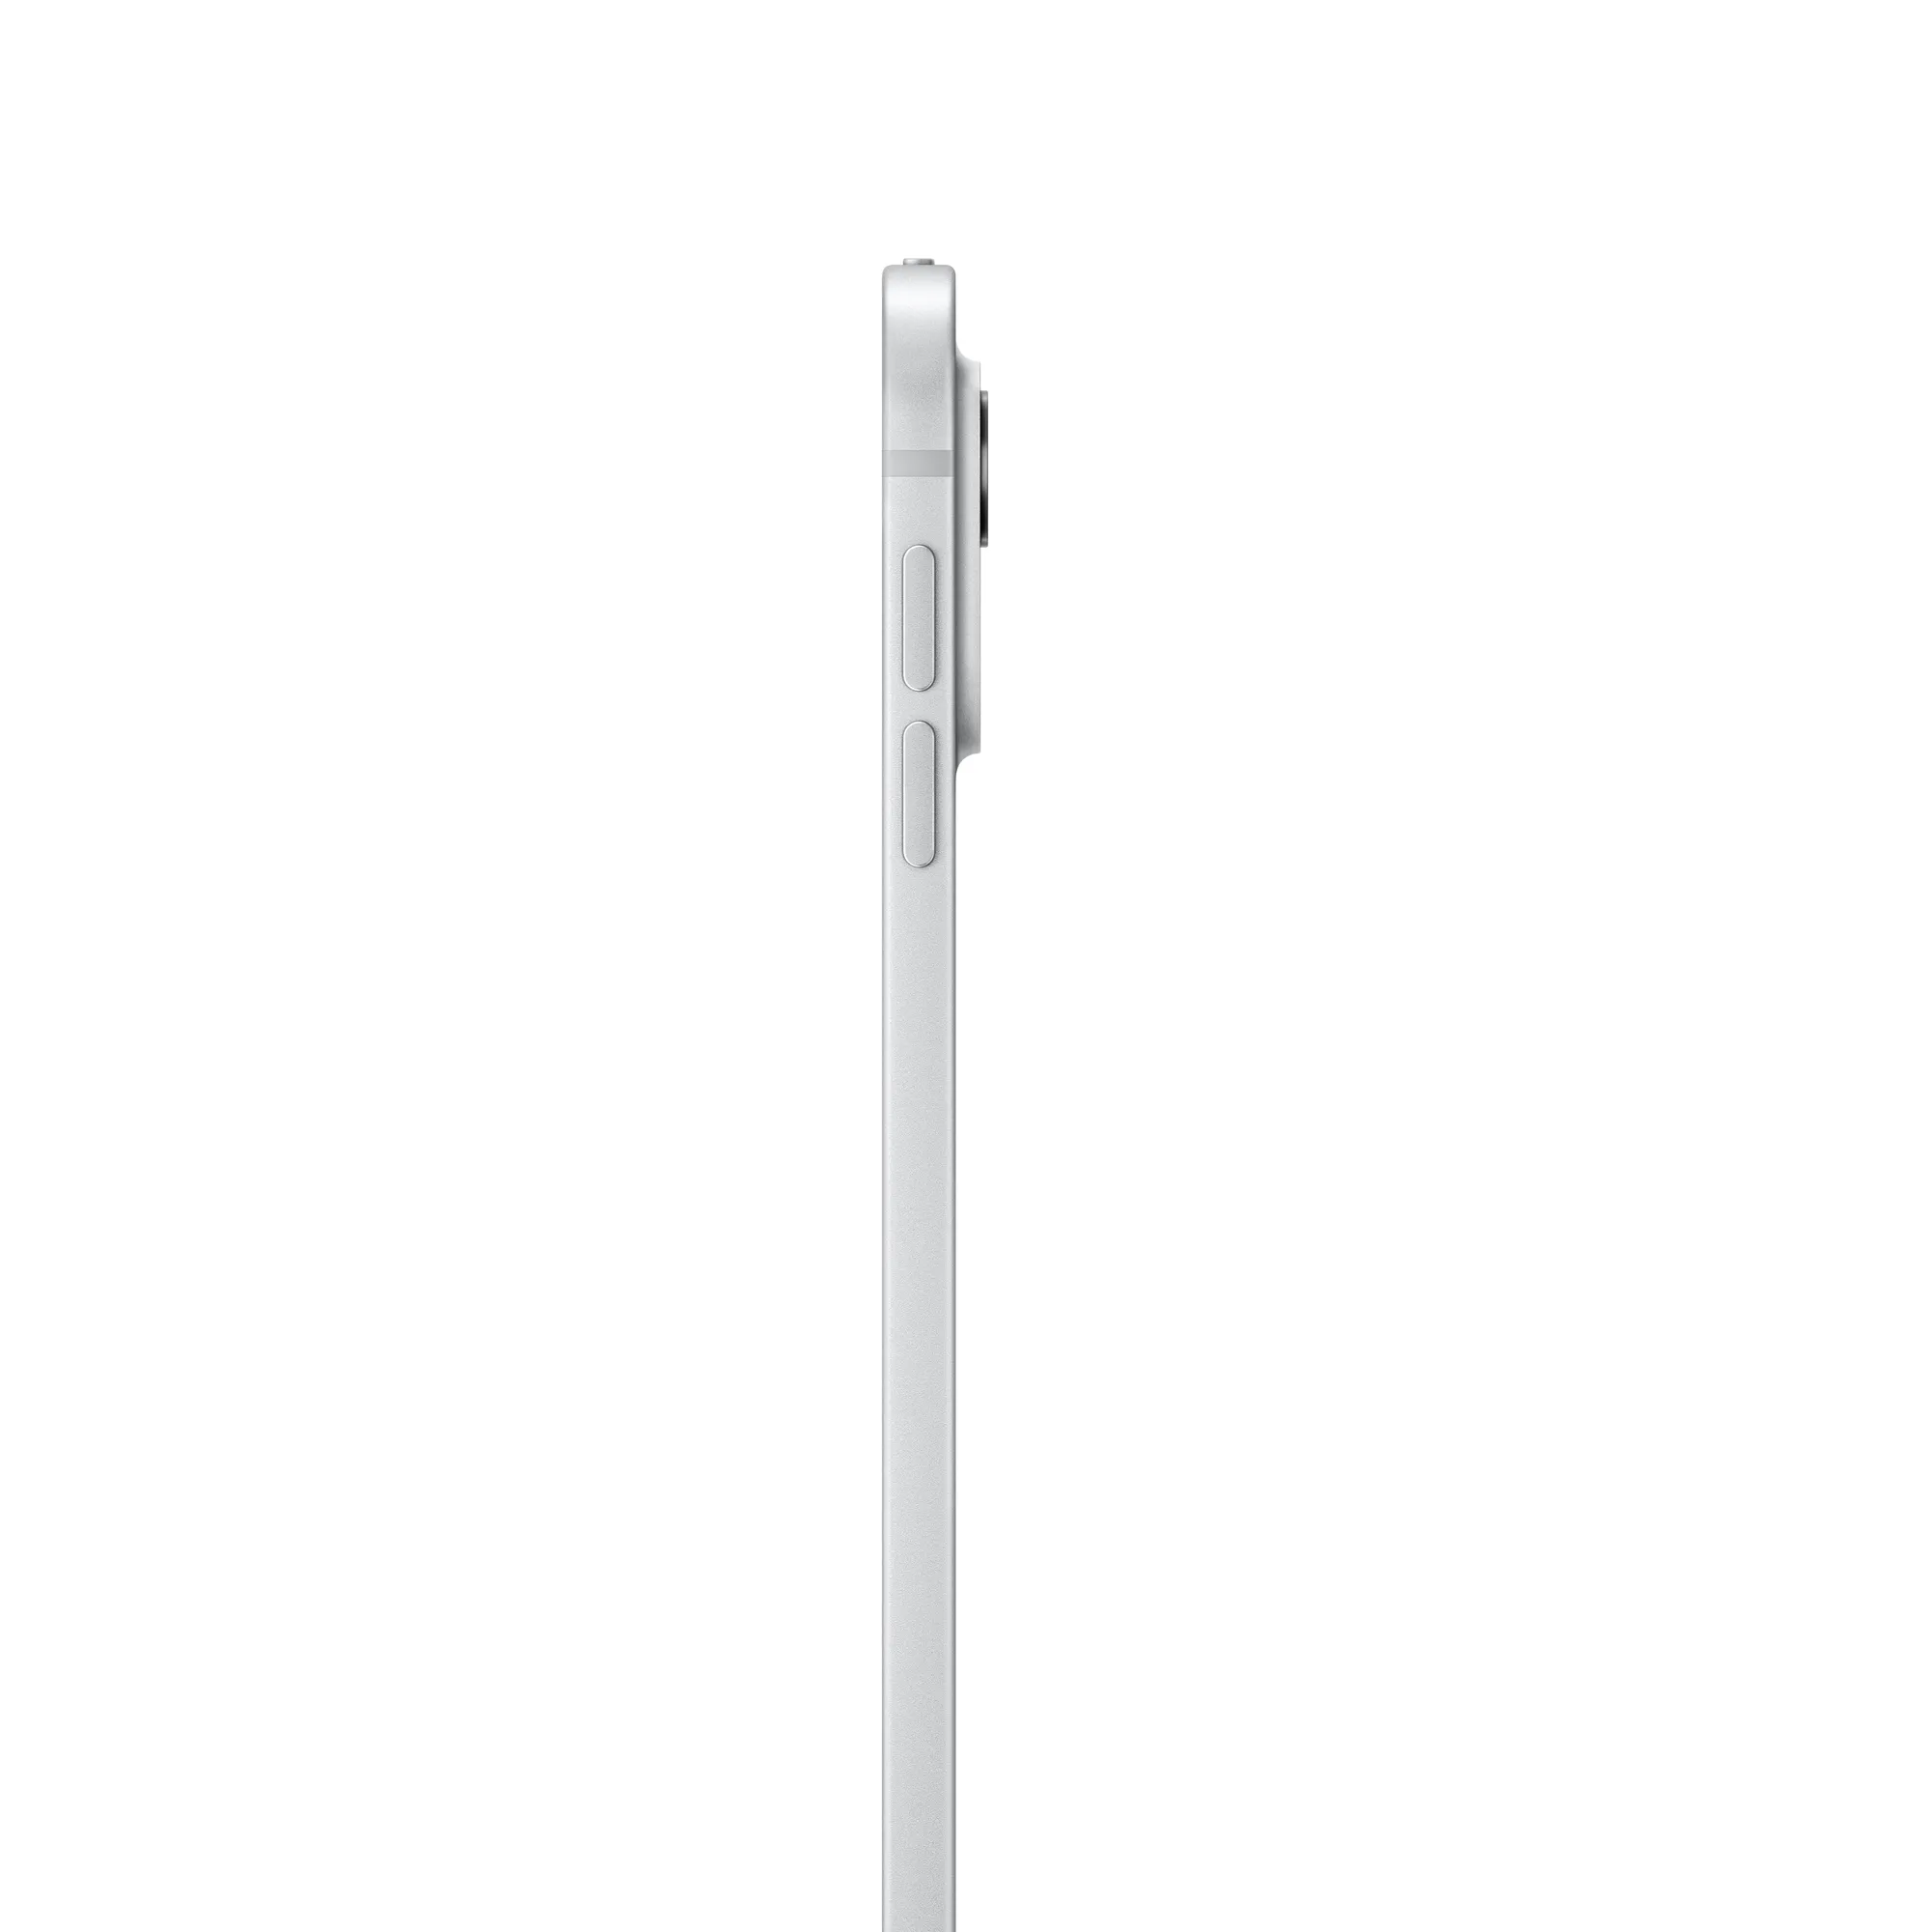 13 hüvelykes iPad Pro, Wi-Fi + Cellular, 512 GB, normál üveg – ezüst